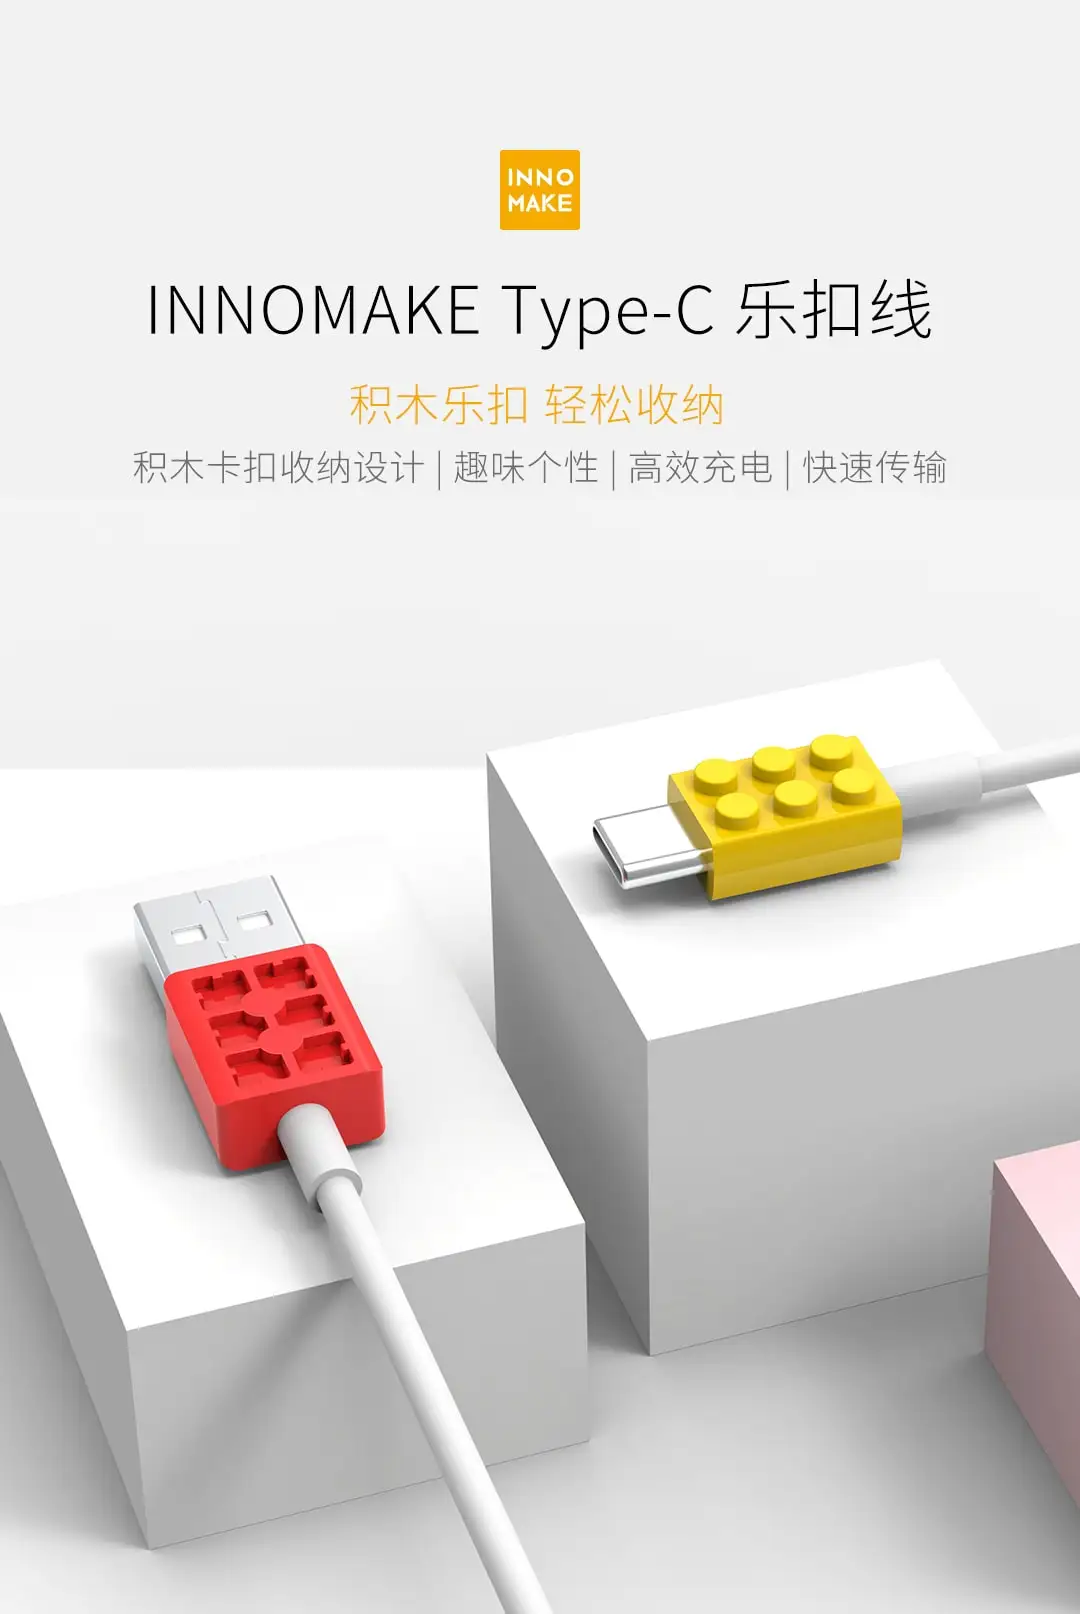 Xiaomi Mijia Youpin INNOMAKE type-C замок кабель для передачи данных желтый+ красный Длина линии 1 м дизайн пряжки для удобного хранения